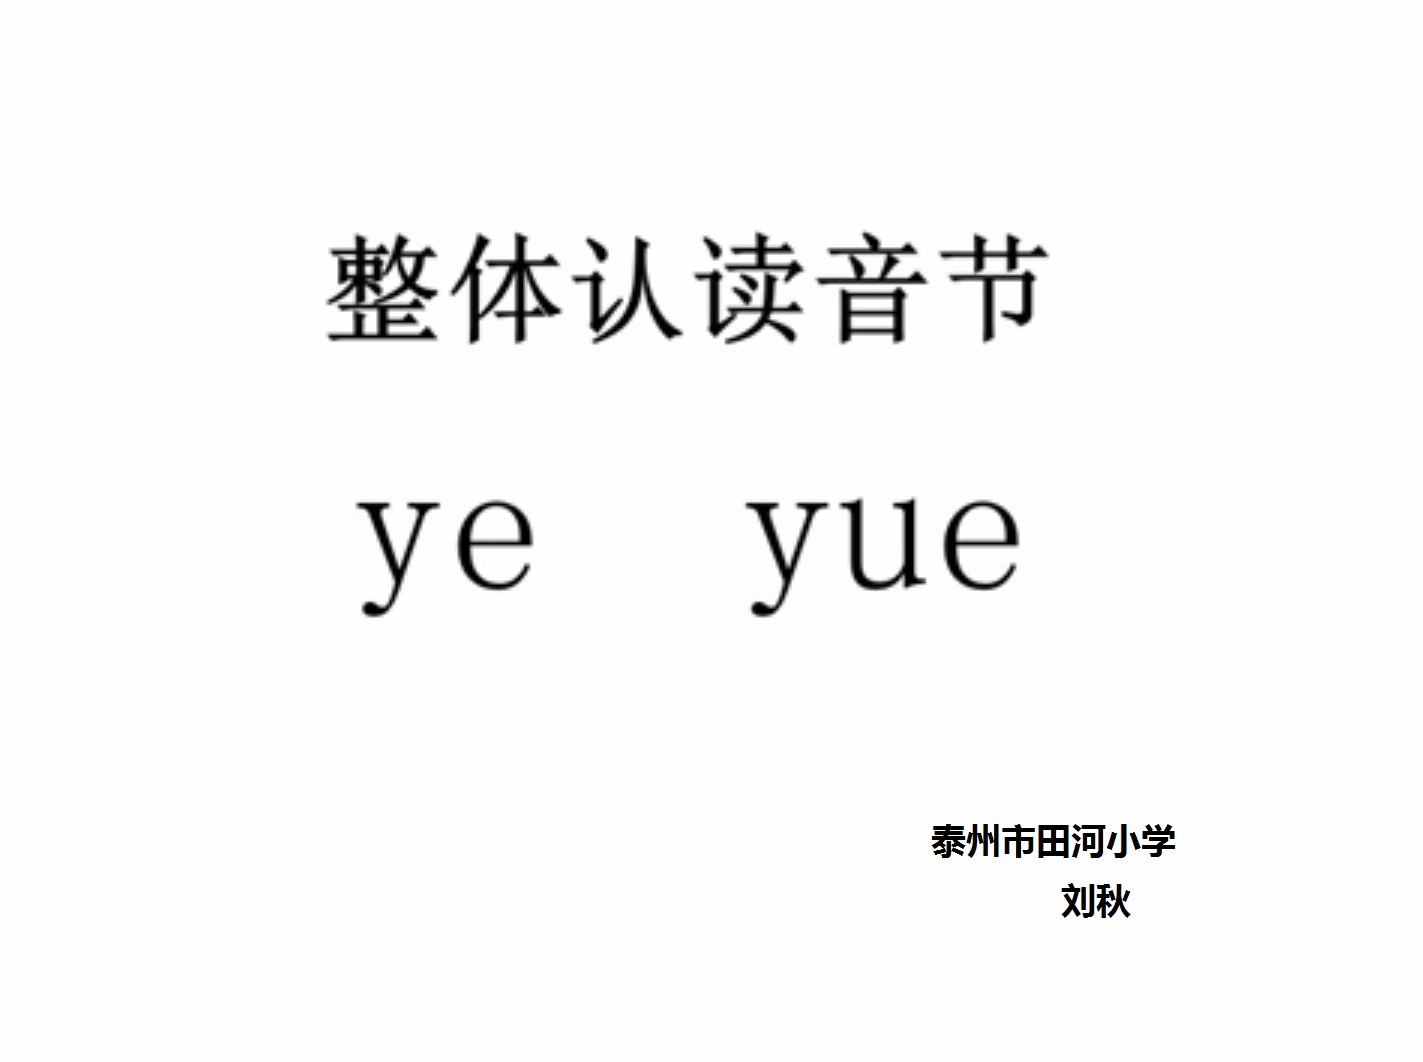 ye yue